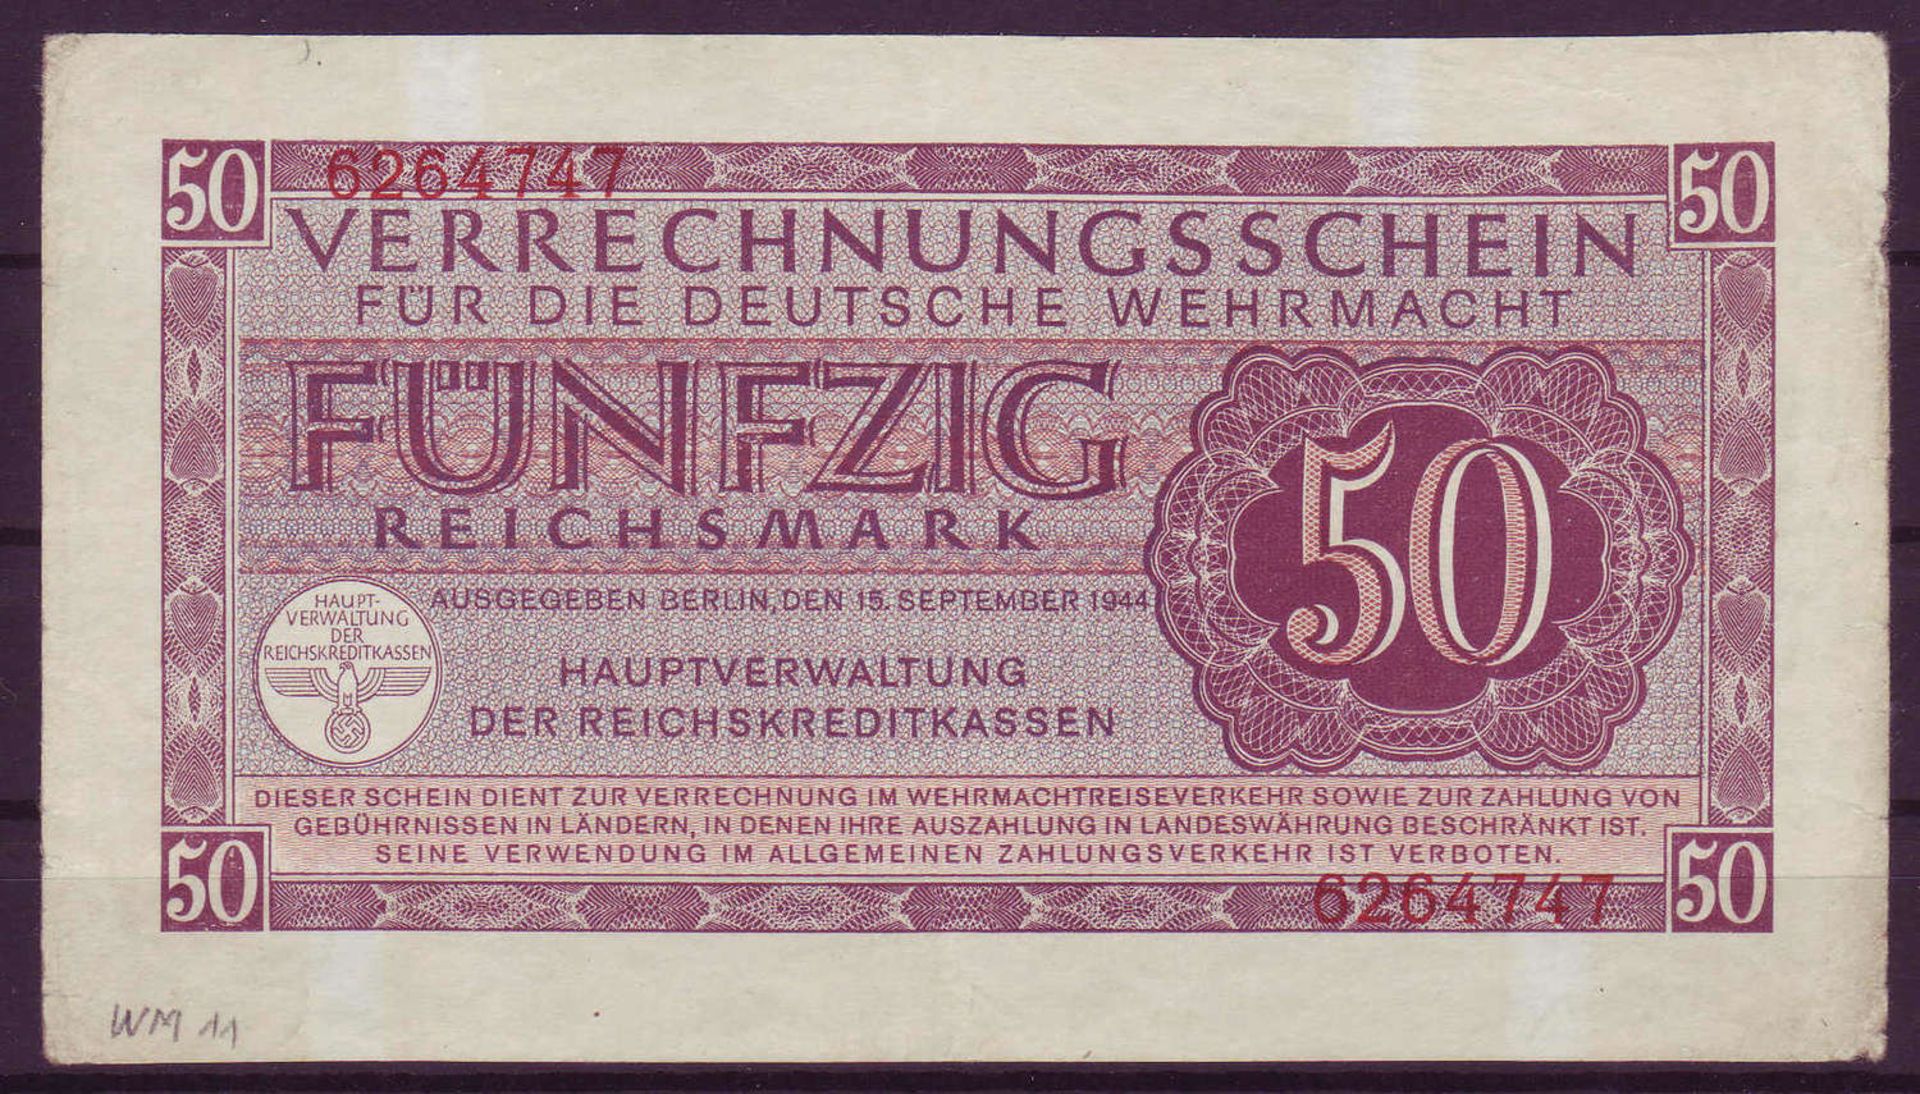 Drittes Reich Deutsche Wehrmacht, Verrechnungsschein 50 Reichsmark. Rosenberg 514. Zustand II-III.